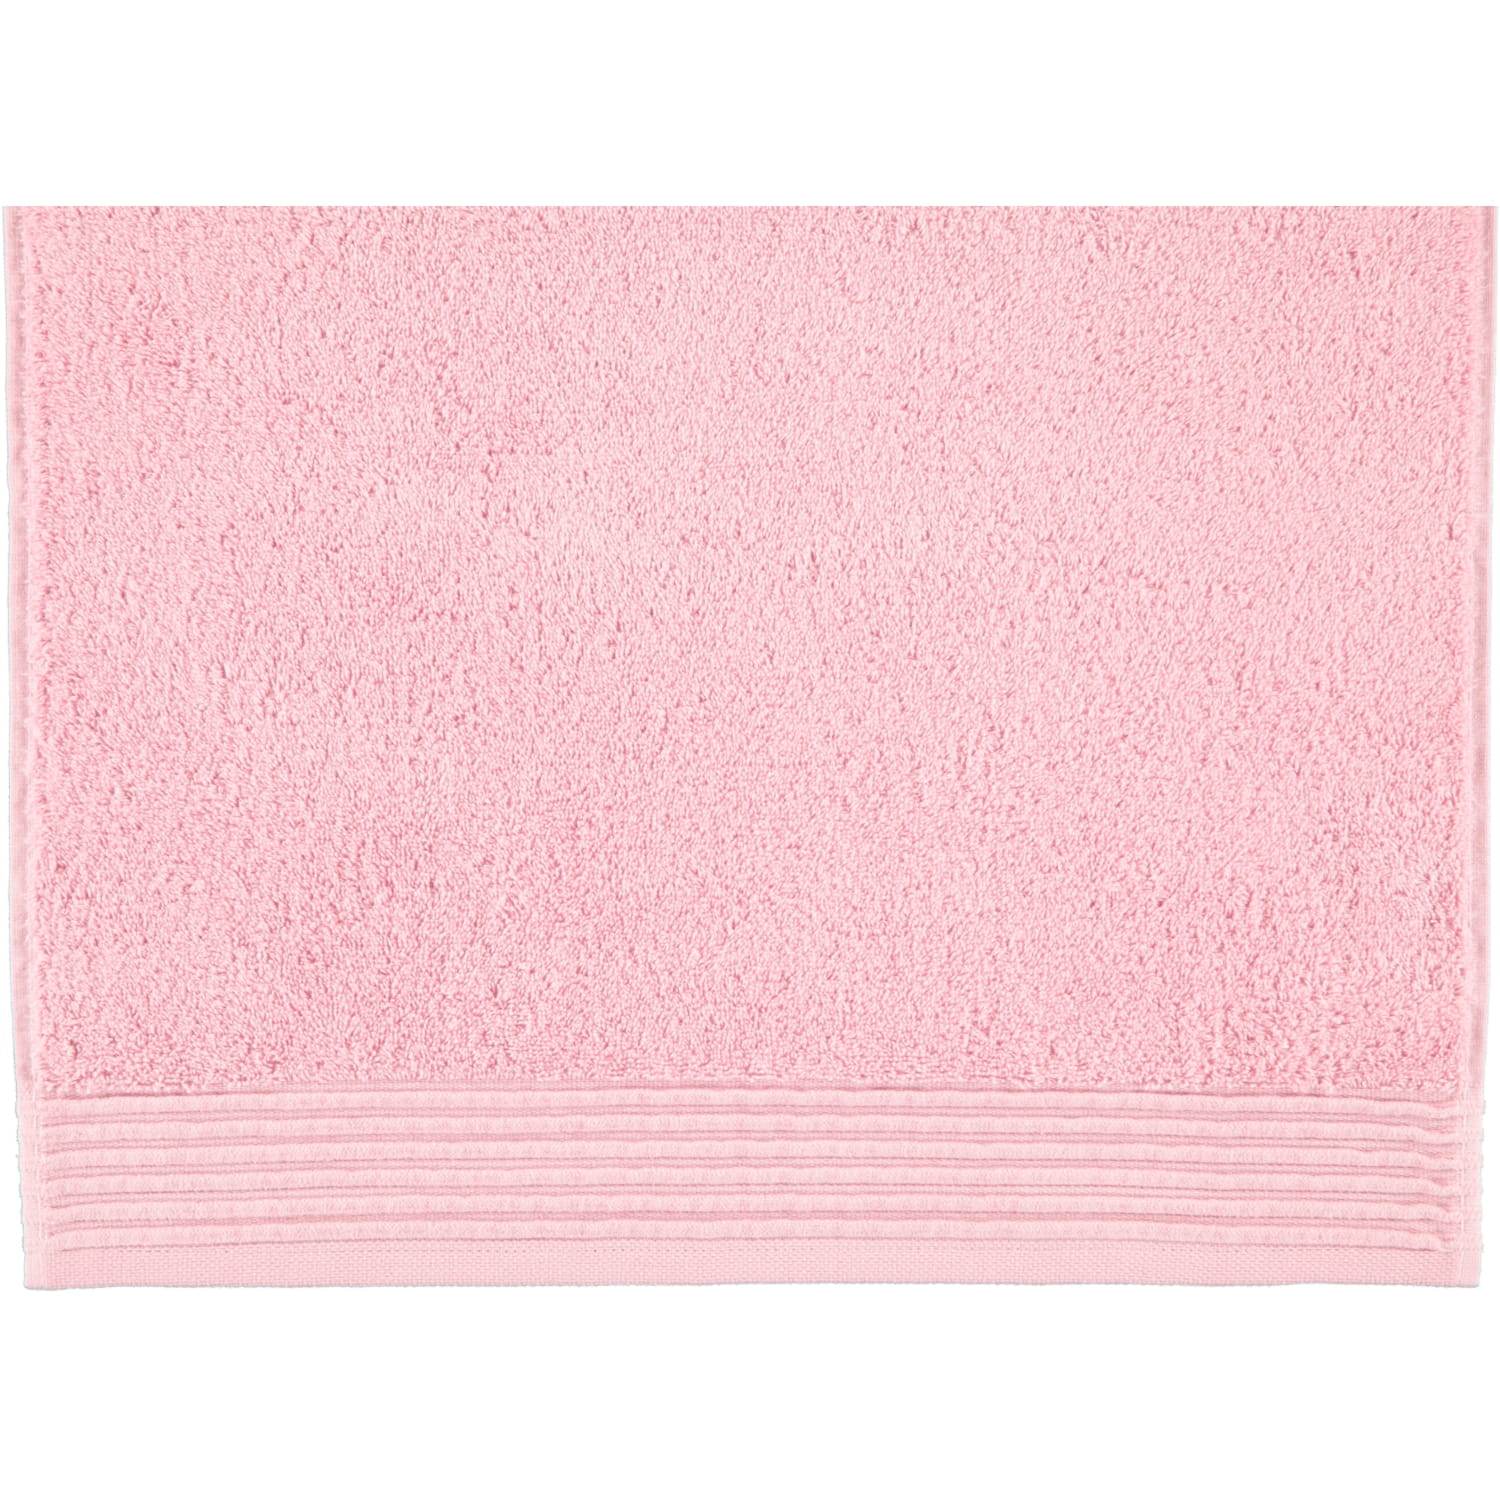 Möve Loft - Möve | - (0-5420/8708) | | Marken 290 Handtücher Möve rose Farbe